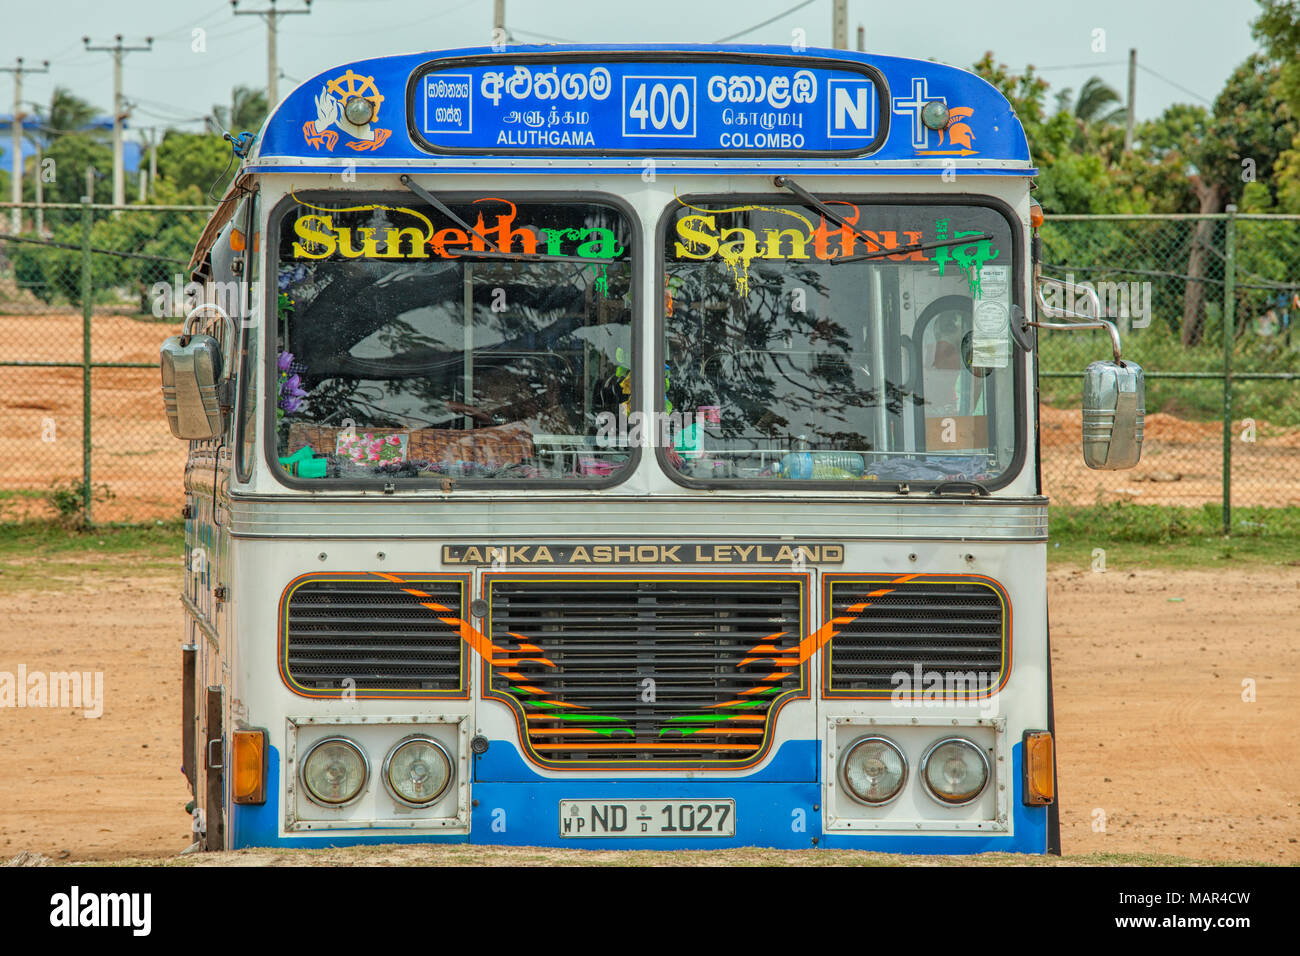 TRINCOMALEE, SRI LANKA -AUG 22, 2013: Lanka Ashok Leyland bus on the street of  Sri Lanka. Lanka Ashok Leyland is Joint venture with Ashok Leyland, se Stock Photo